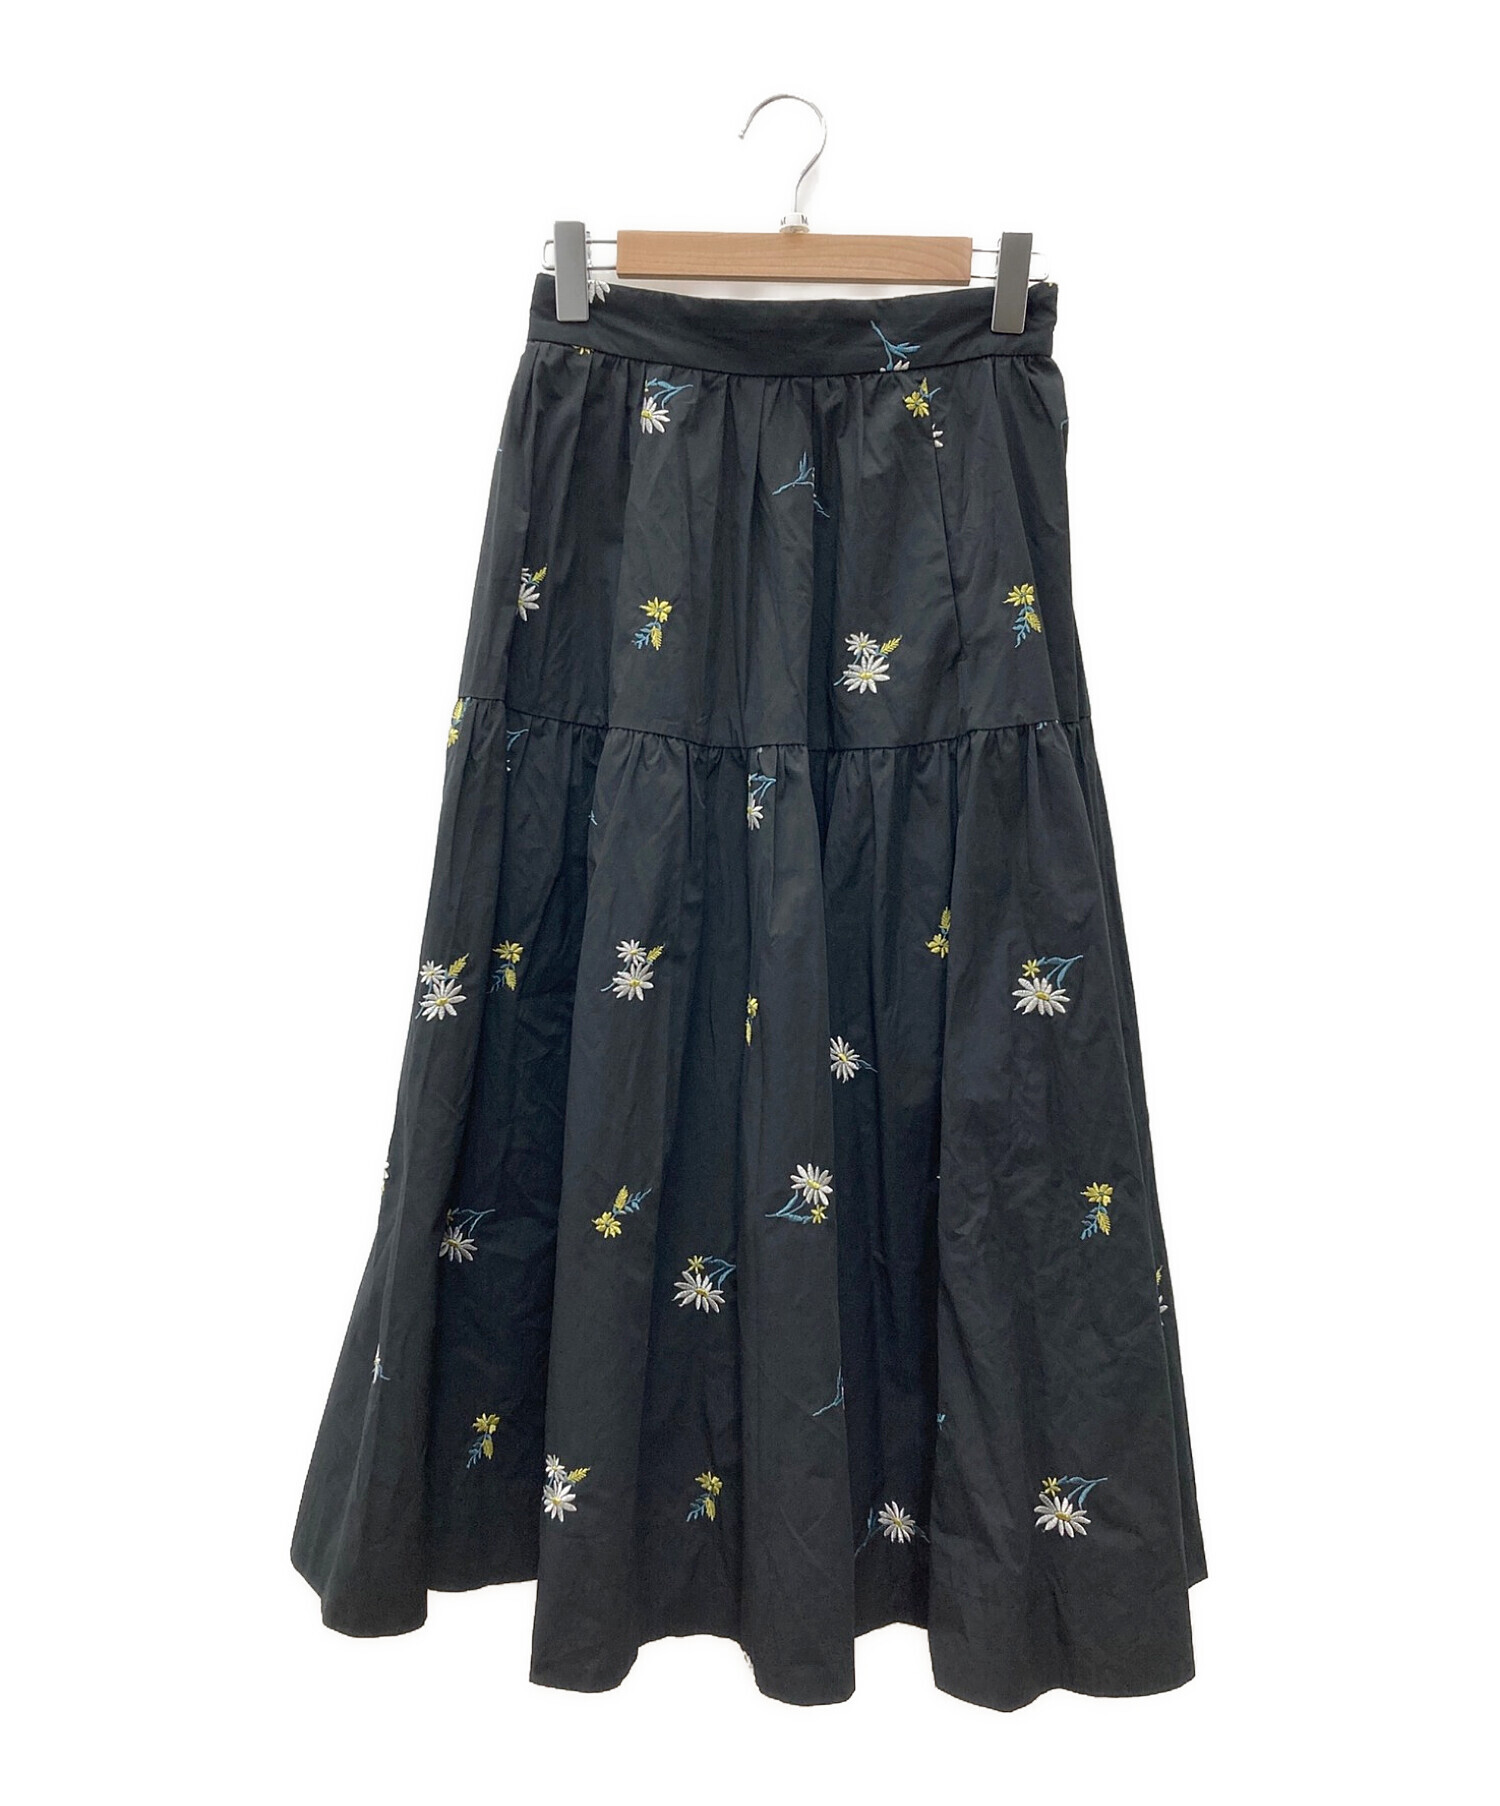 Apuweiser-richeマーガレット刺繍スカート